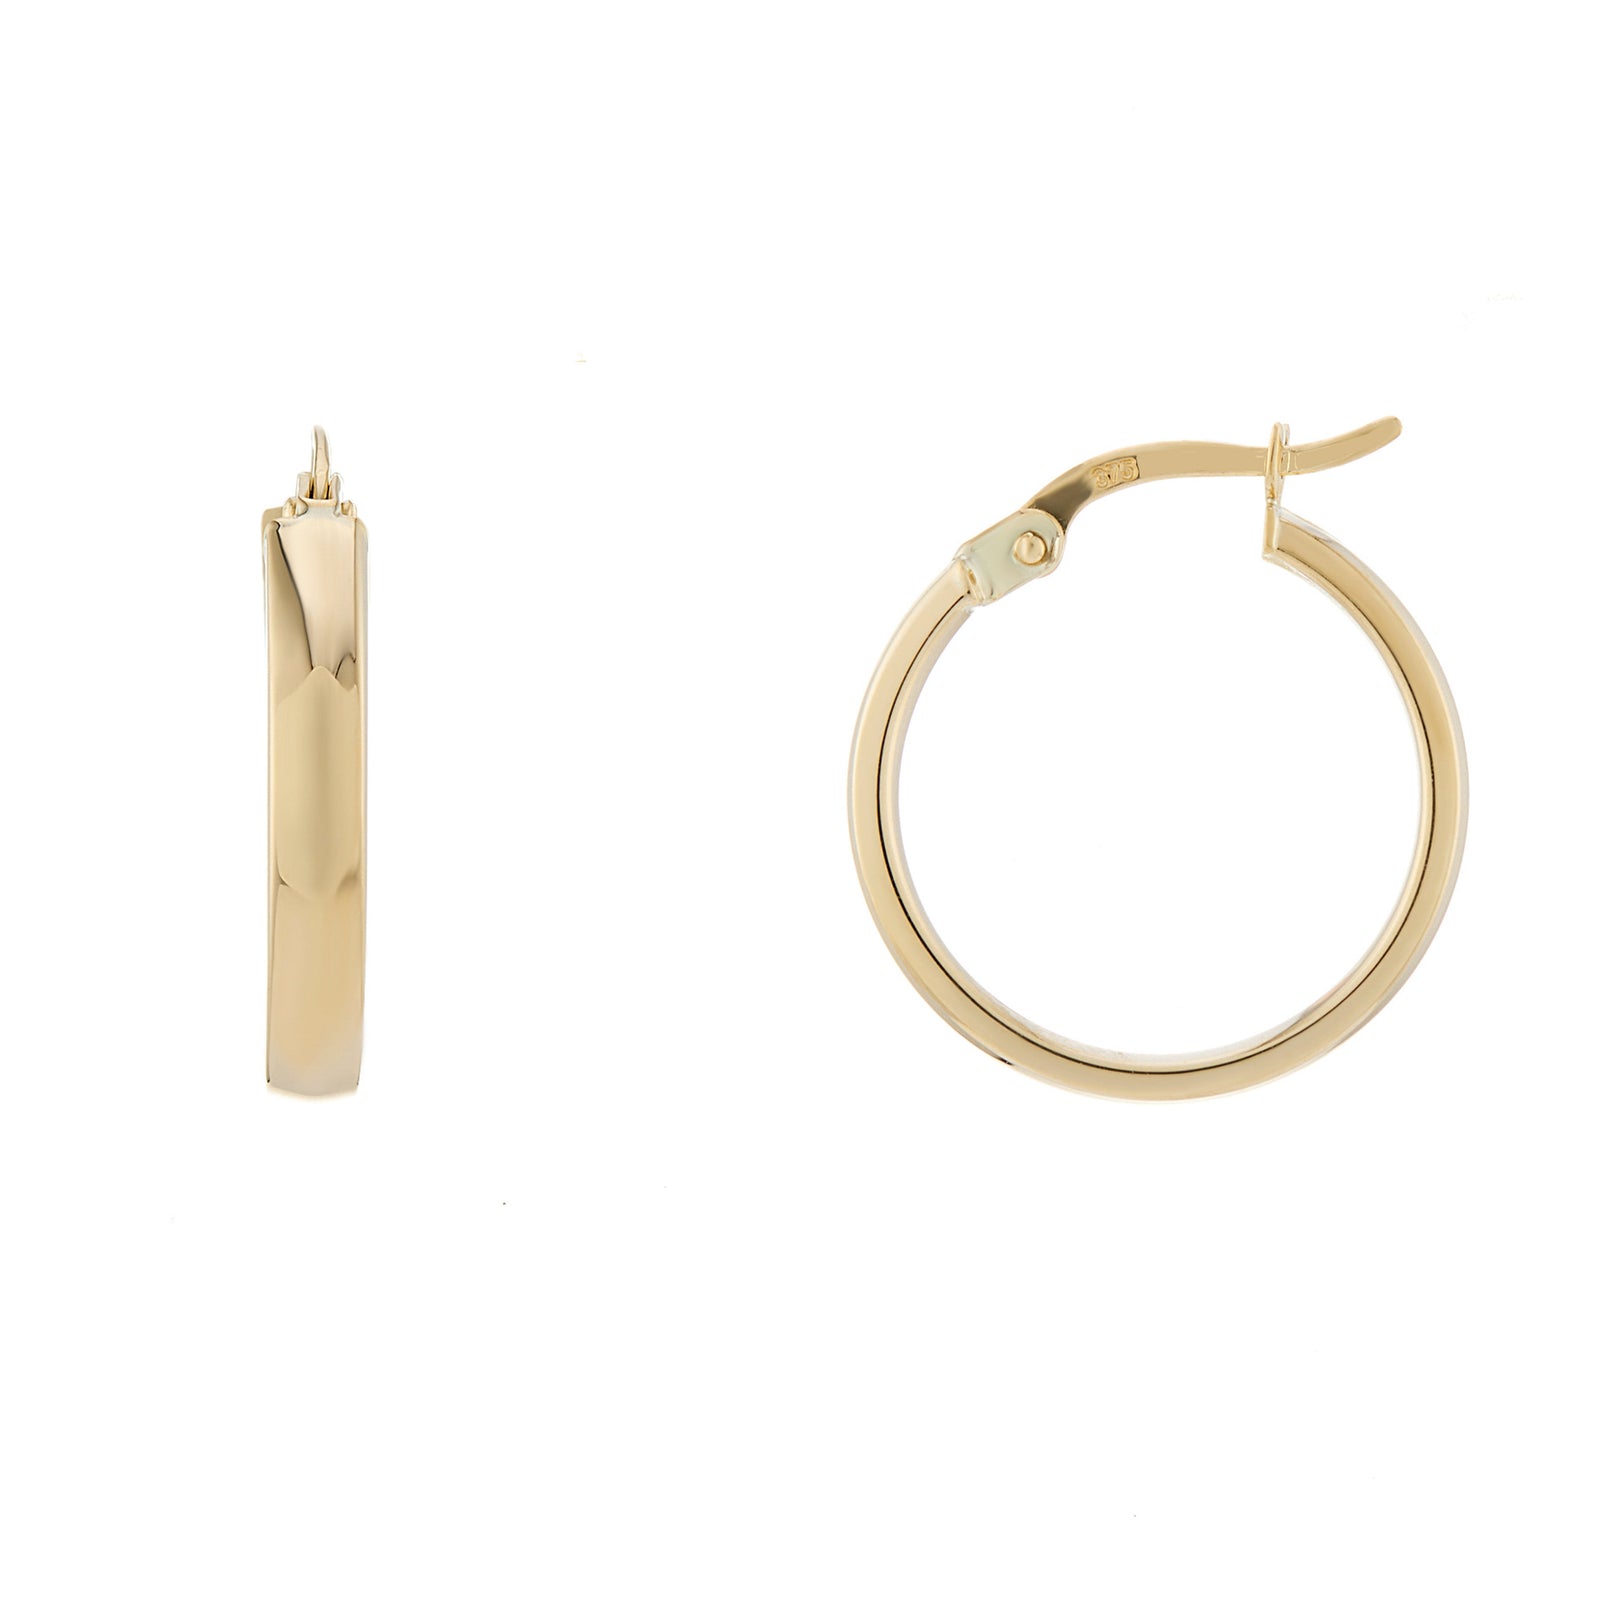 9ct gold 15mm plain hoop earrings